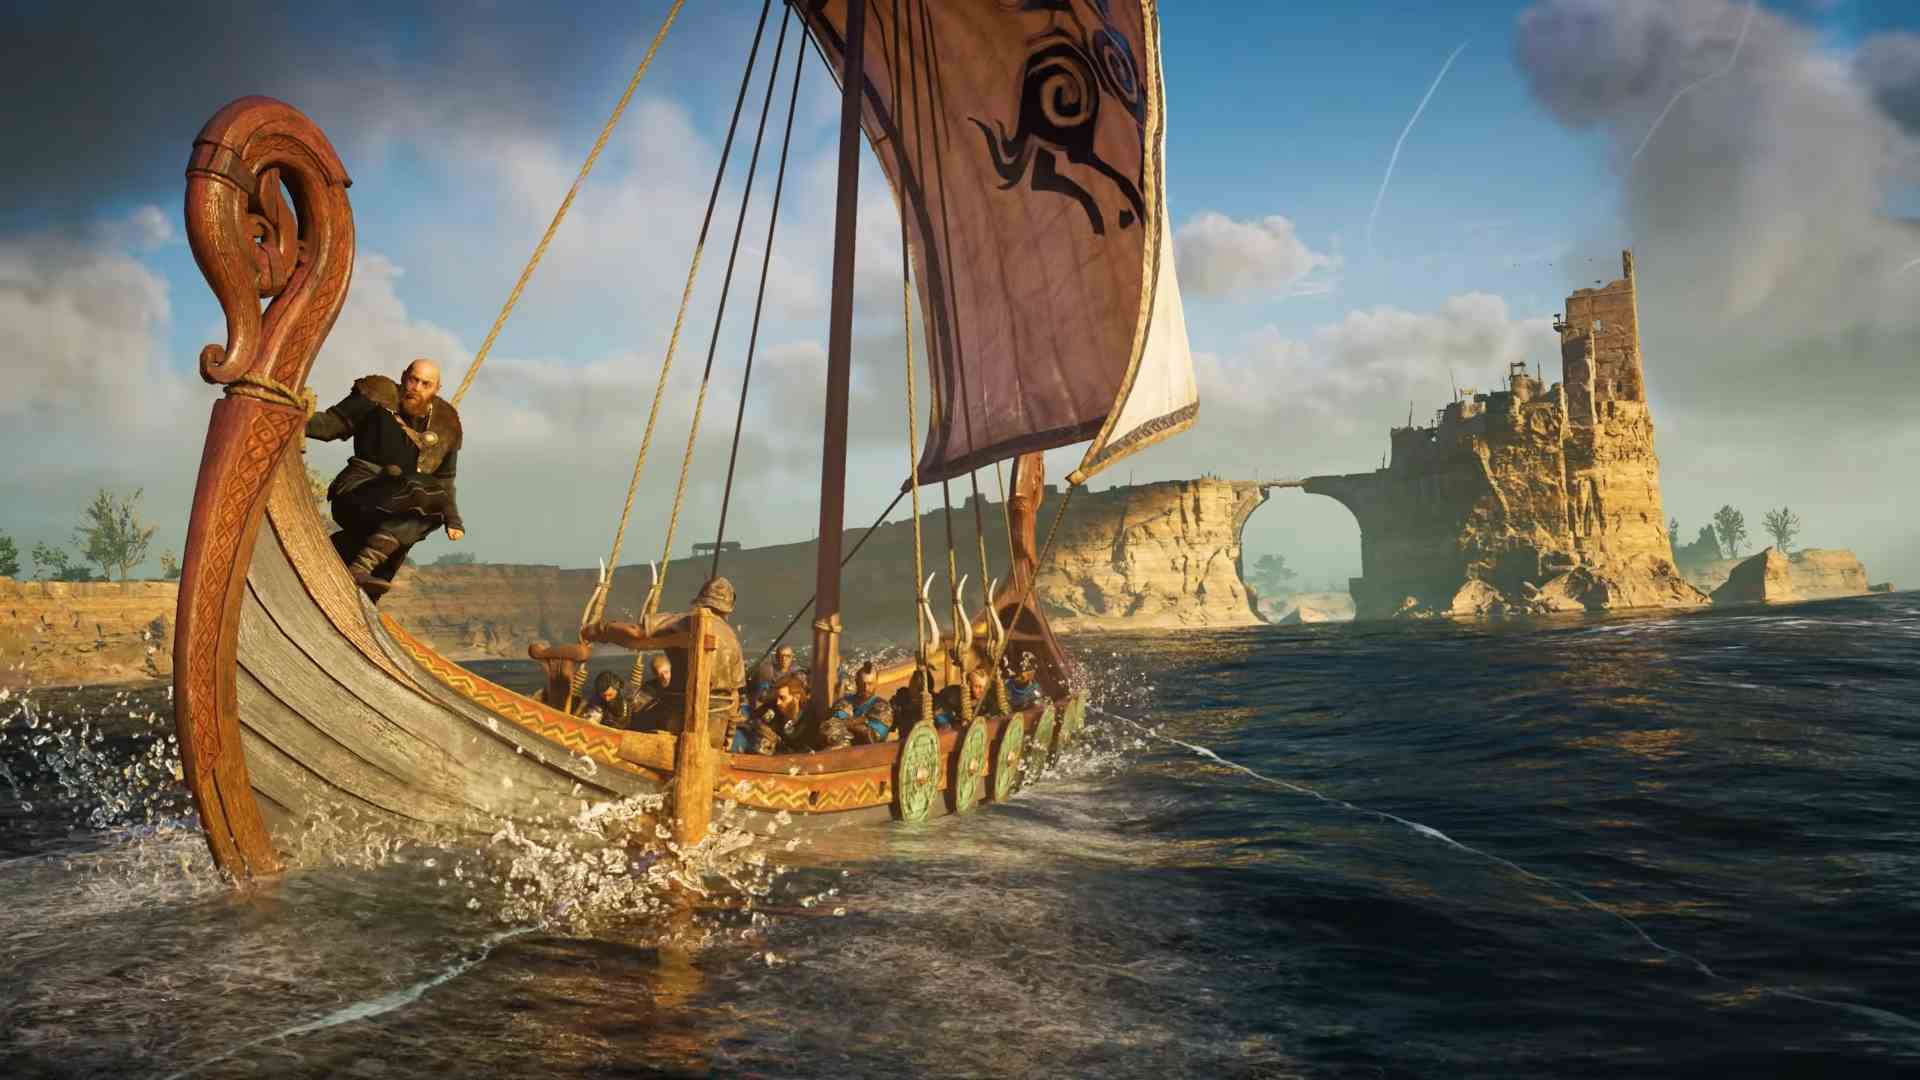 En iyi eğitici oyunlar: Assassin's Creed Discovery Tours.  Resim denizde seyreden bir Viking gemisini gösteriyor.